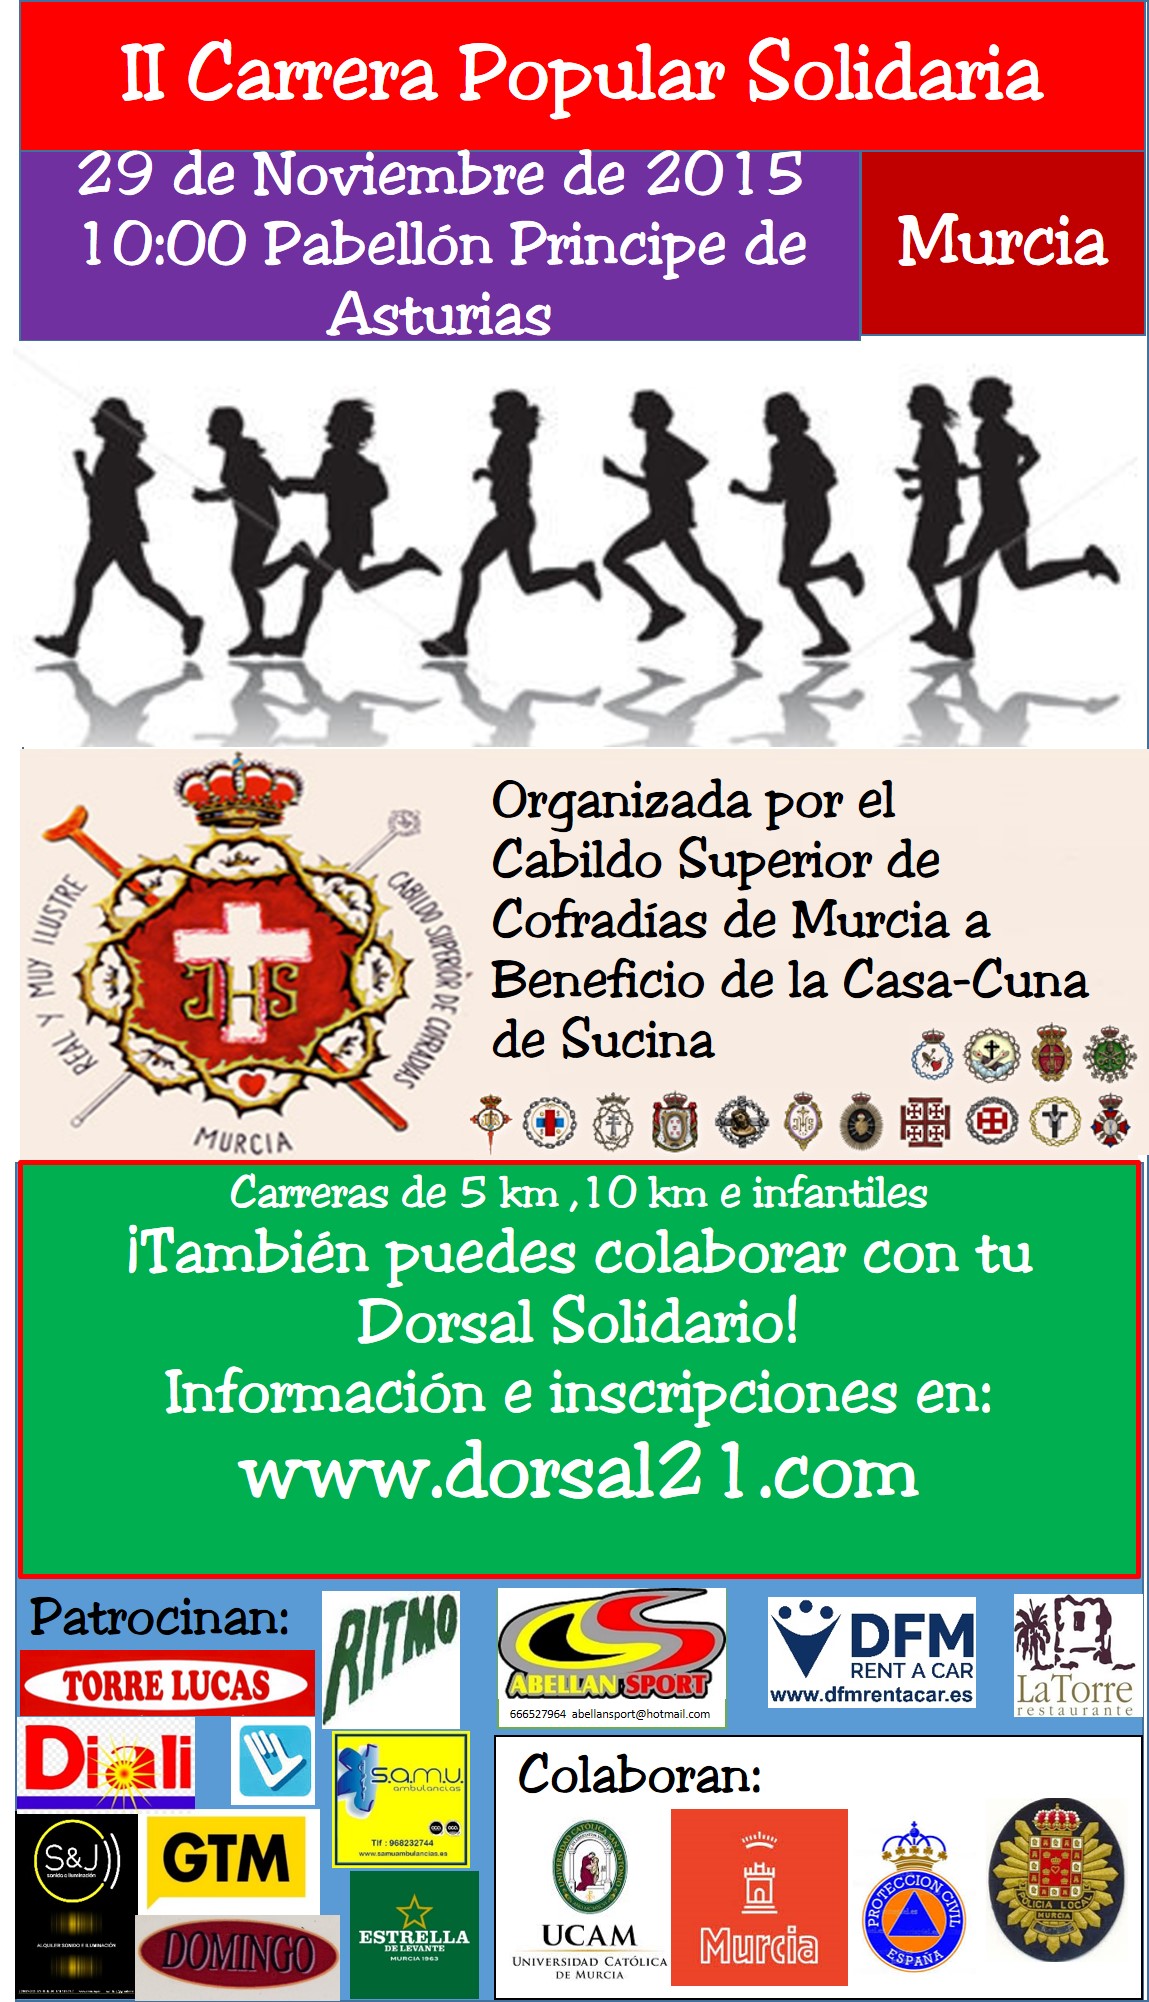 http://www.dorsal21.com/carteles/c3c8_cartel_casa_cuna.jpg